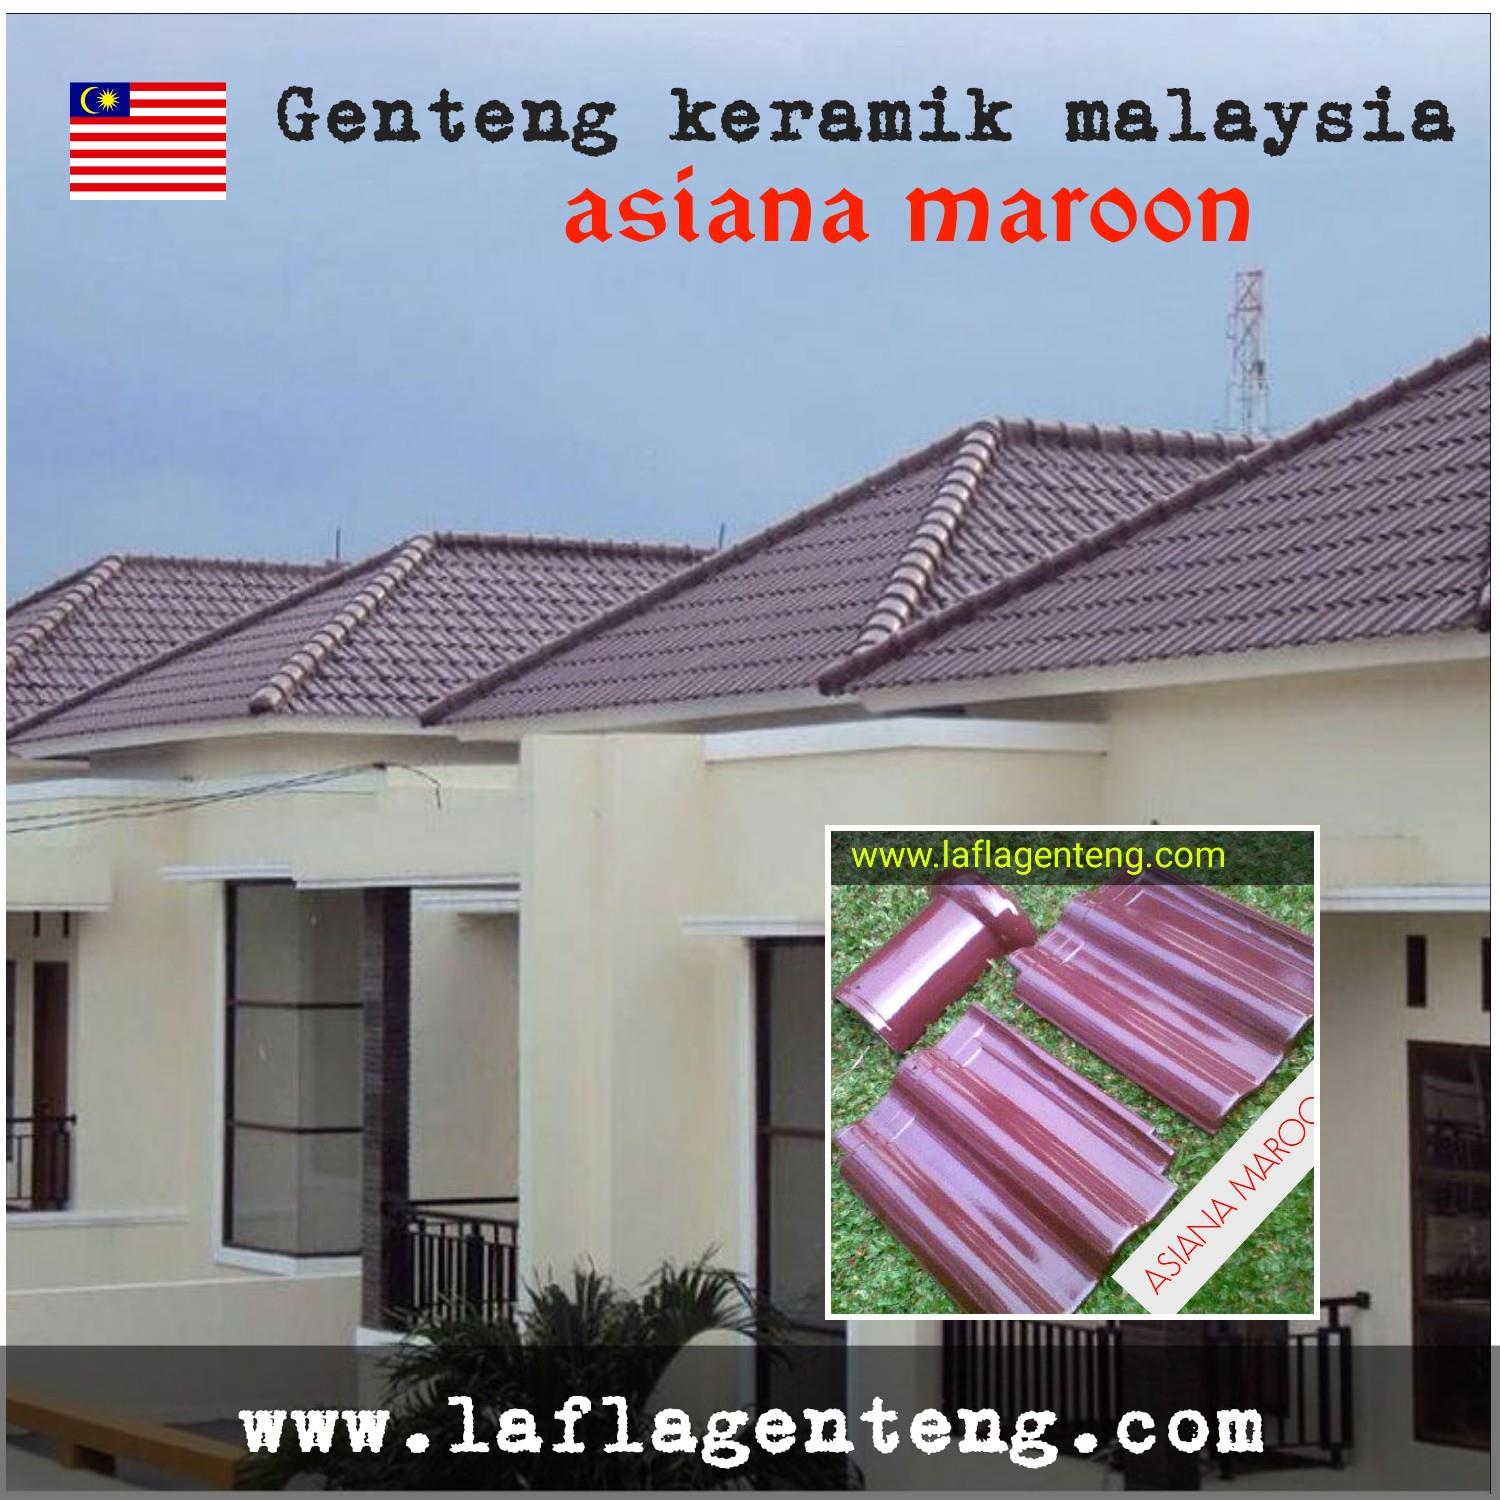 Jual Genteng Keramik Asiana Maroon 10 Pcs M2 Harga Murah Bogor